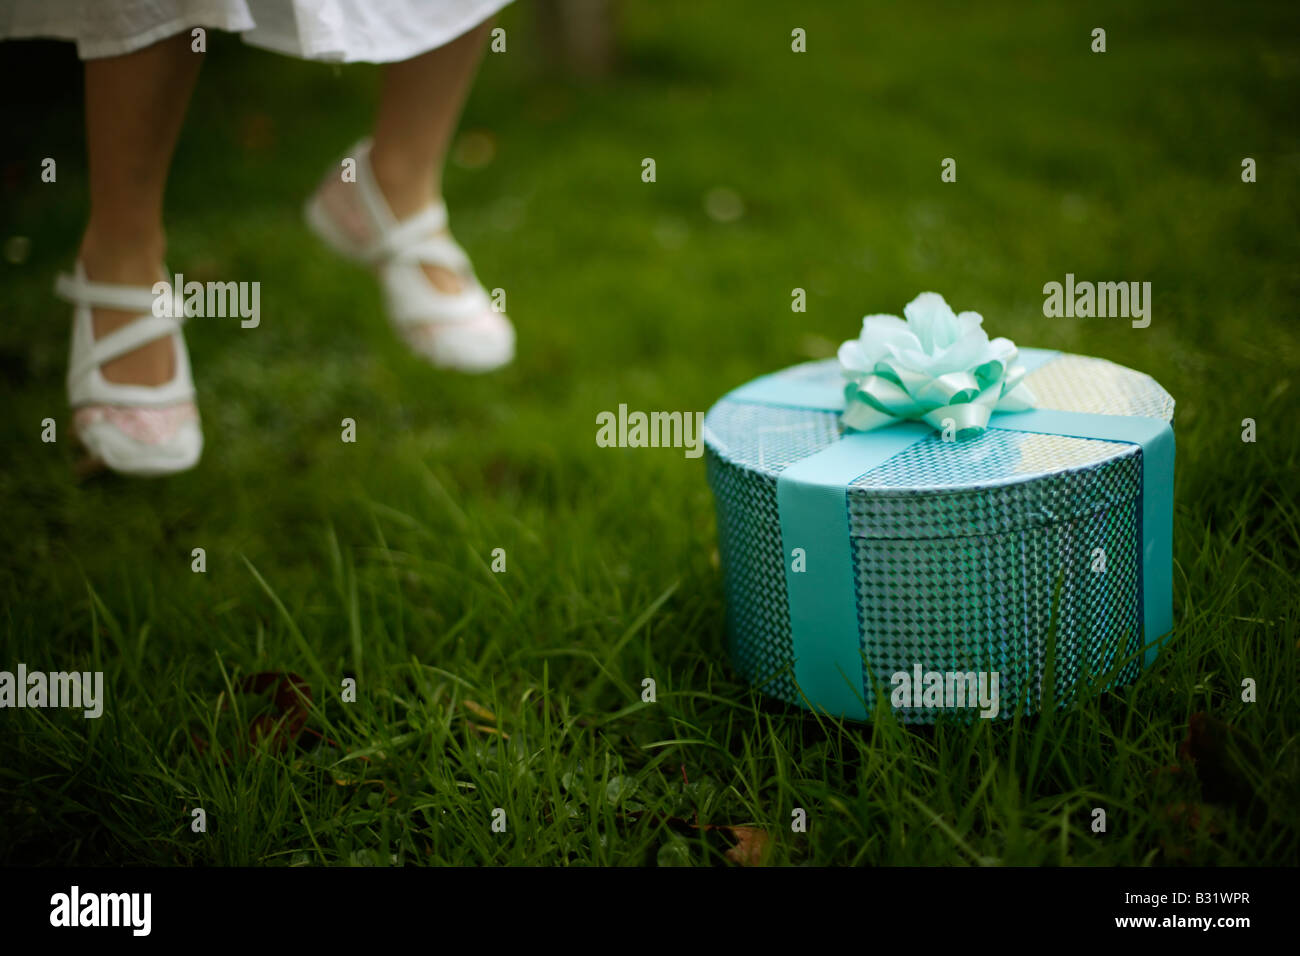 Bambina di cinque anni con scatola verde avvolto in nastro e rose, salti in aria i piedi da terra Foto Stock